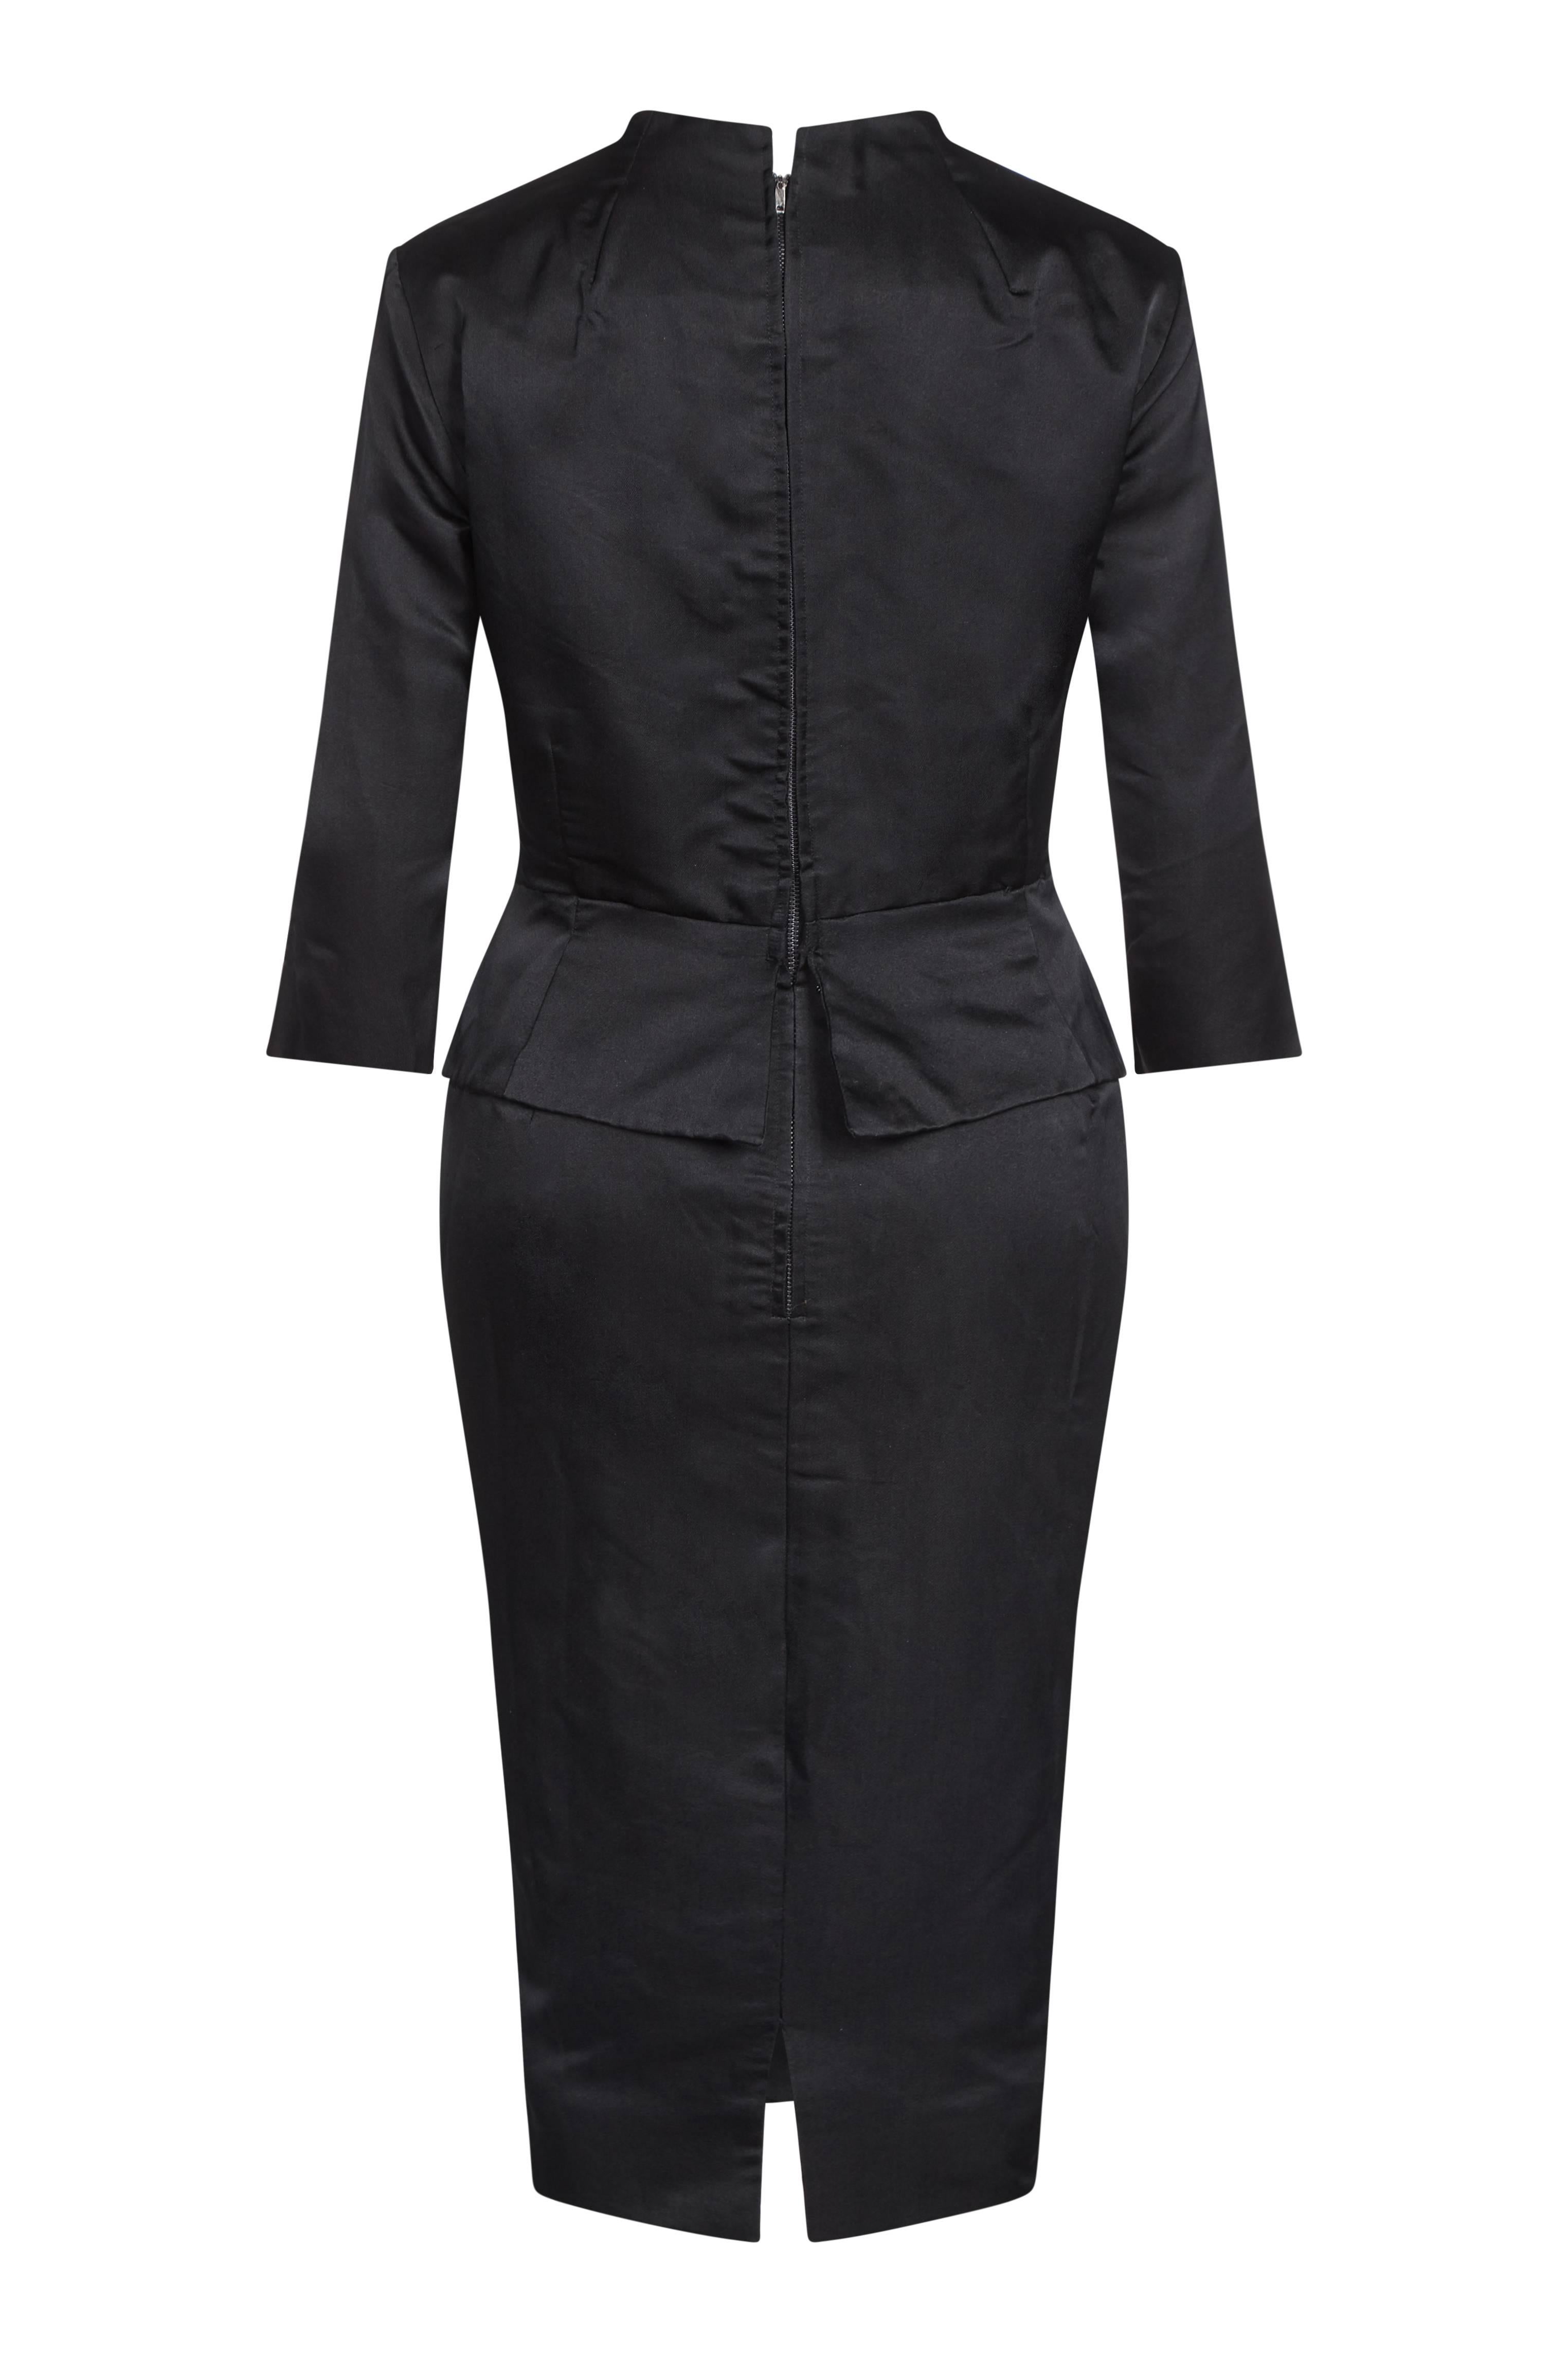 Cette élégante robe de soirée en soie noire des années 1950 est une combinaison étonnante de caractéristiques de conception, permettant d'obtenir un look de soirée profondément glamour et pourtant formel. Les manches mi-longues et le détail du